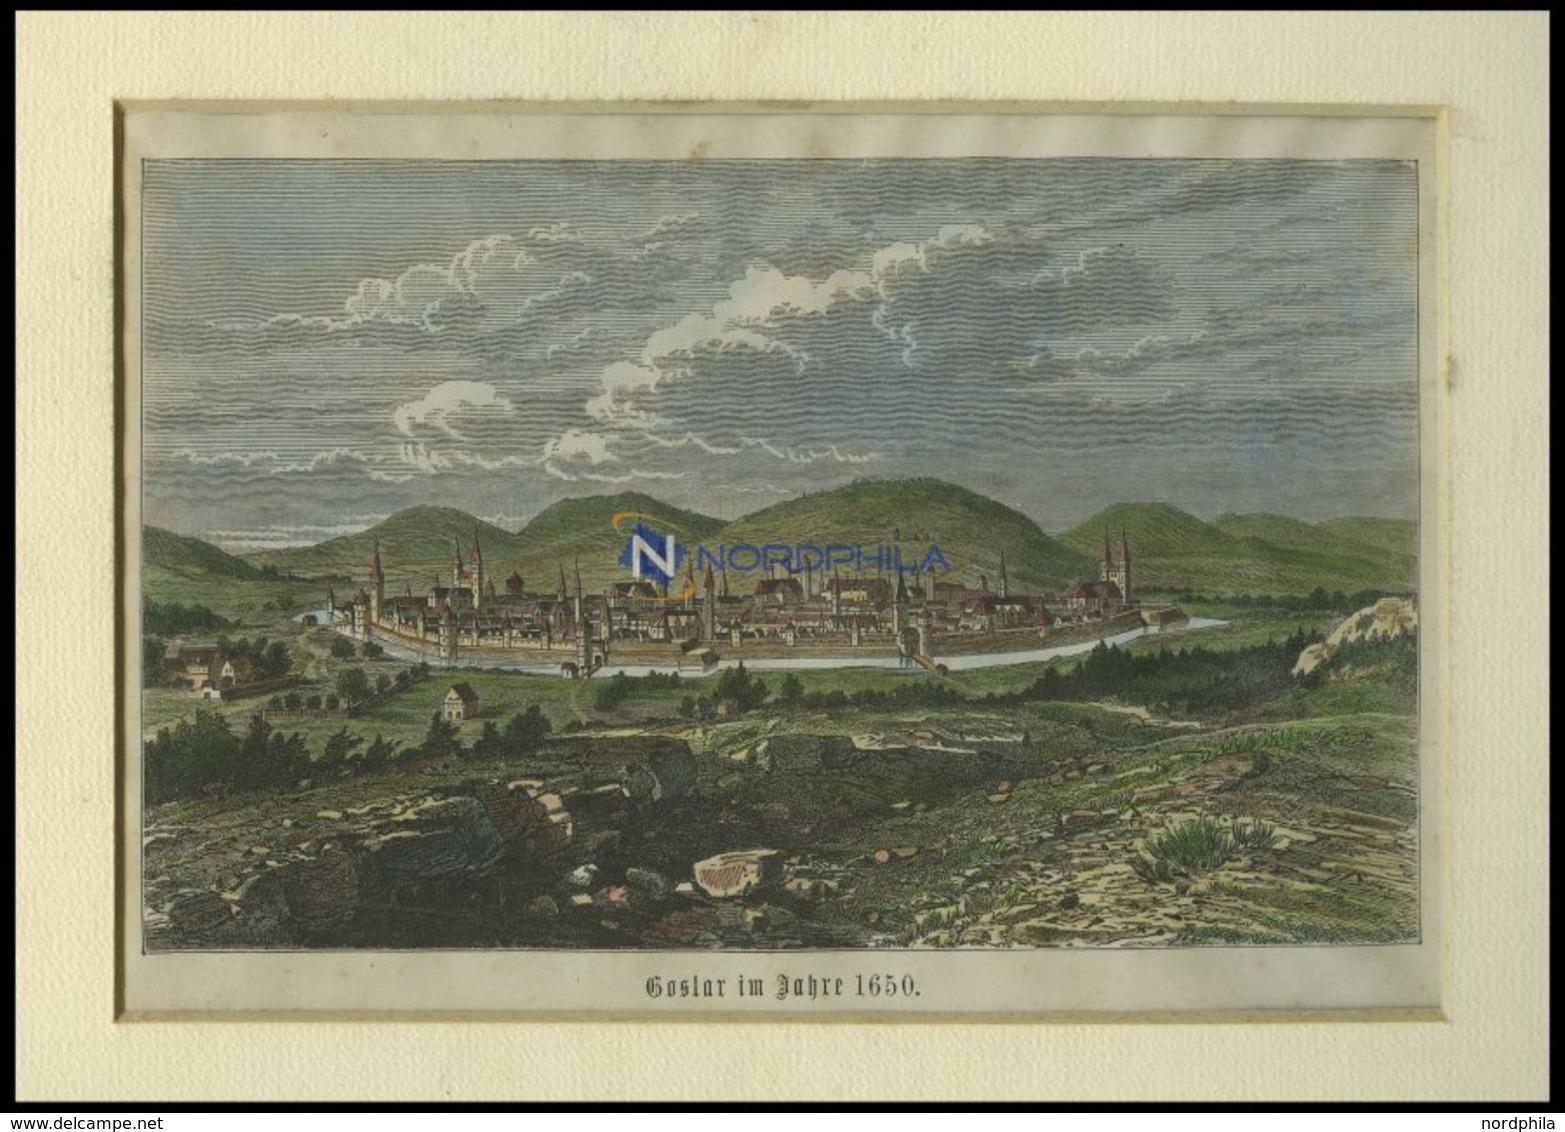 GOSLAR, Gesamtansicht, Kolorierter Holzstich Auf Vaterländische Geschichten Von Görges 1843/4 - Lithographies